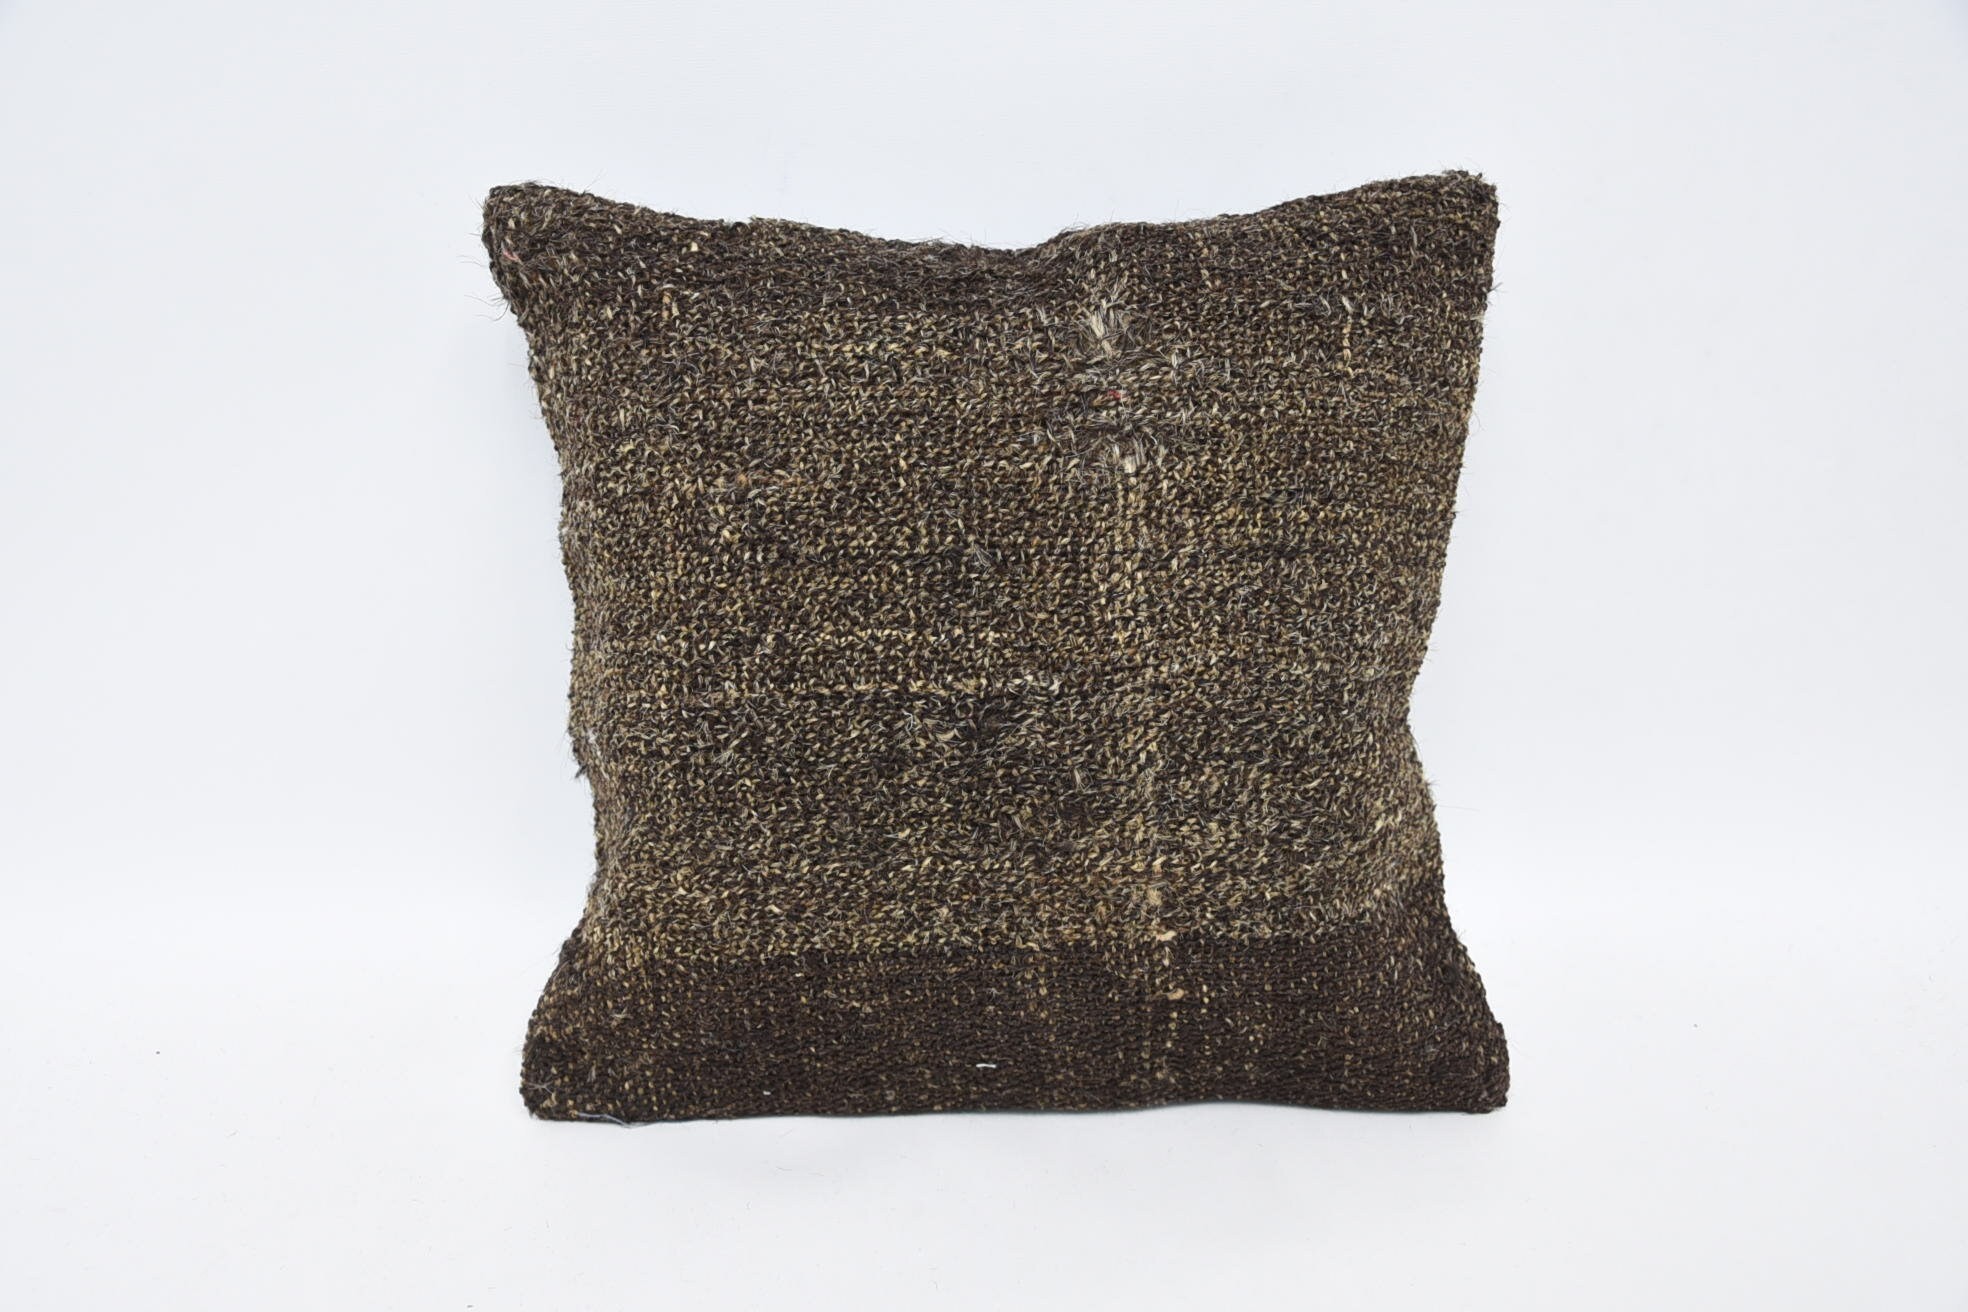 Boho Pillow Sham Cover, Boho Throw Cushion, 12"x12" Brown Cushion, Traditional Cushion Cover, Throw Kilim Pillow, Vintage Pillow